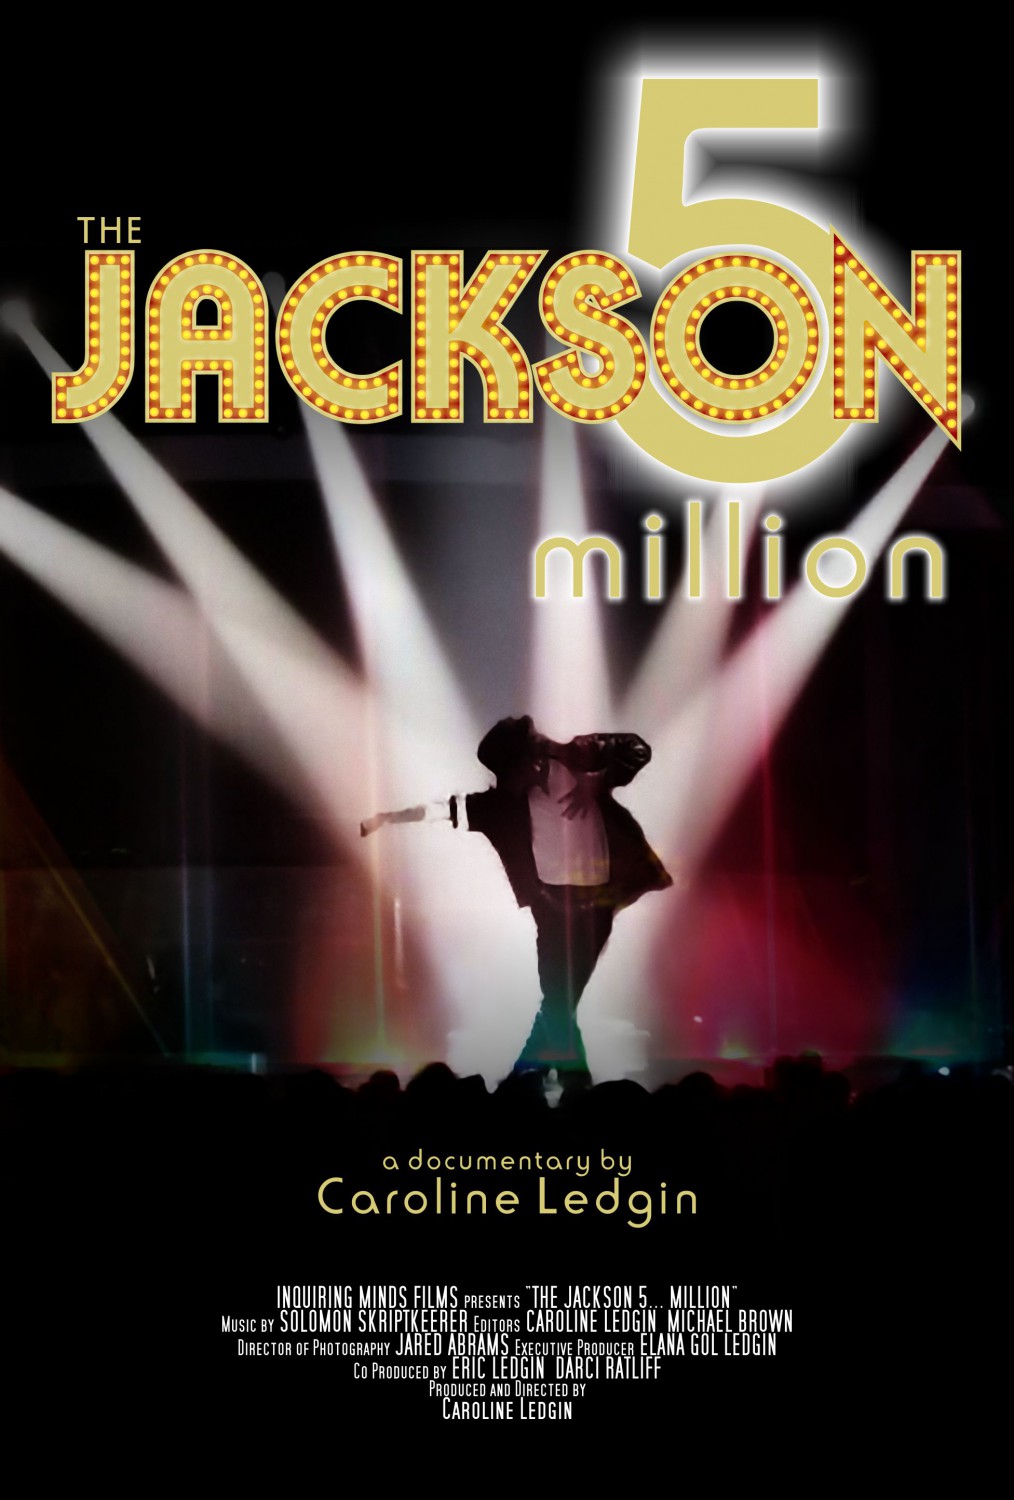 Productionmark-Services-Film-Poster-Design-Feature-Film-Jackson-Five-Million